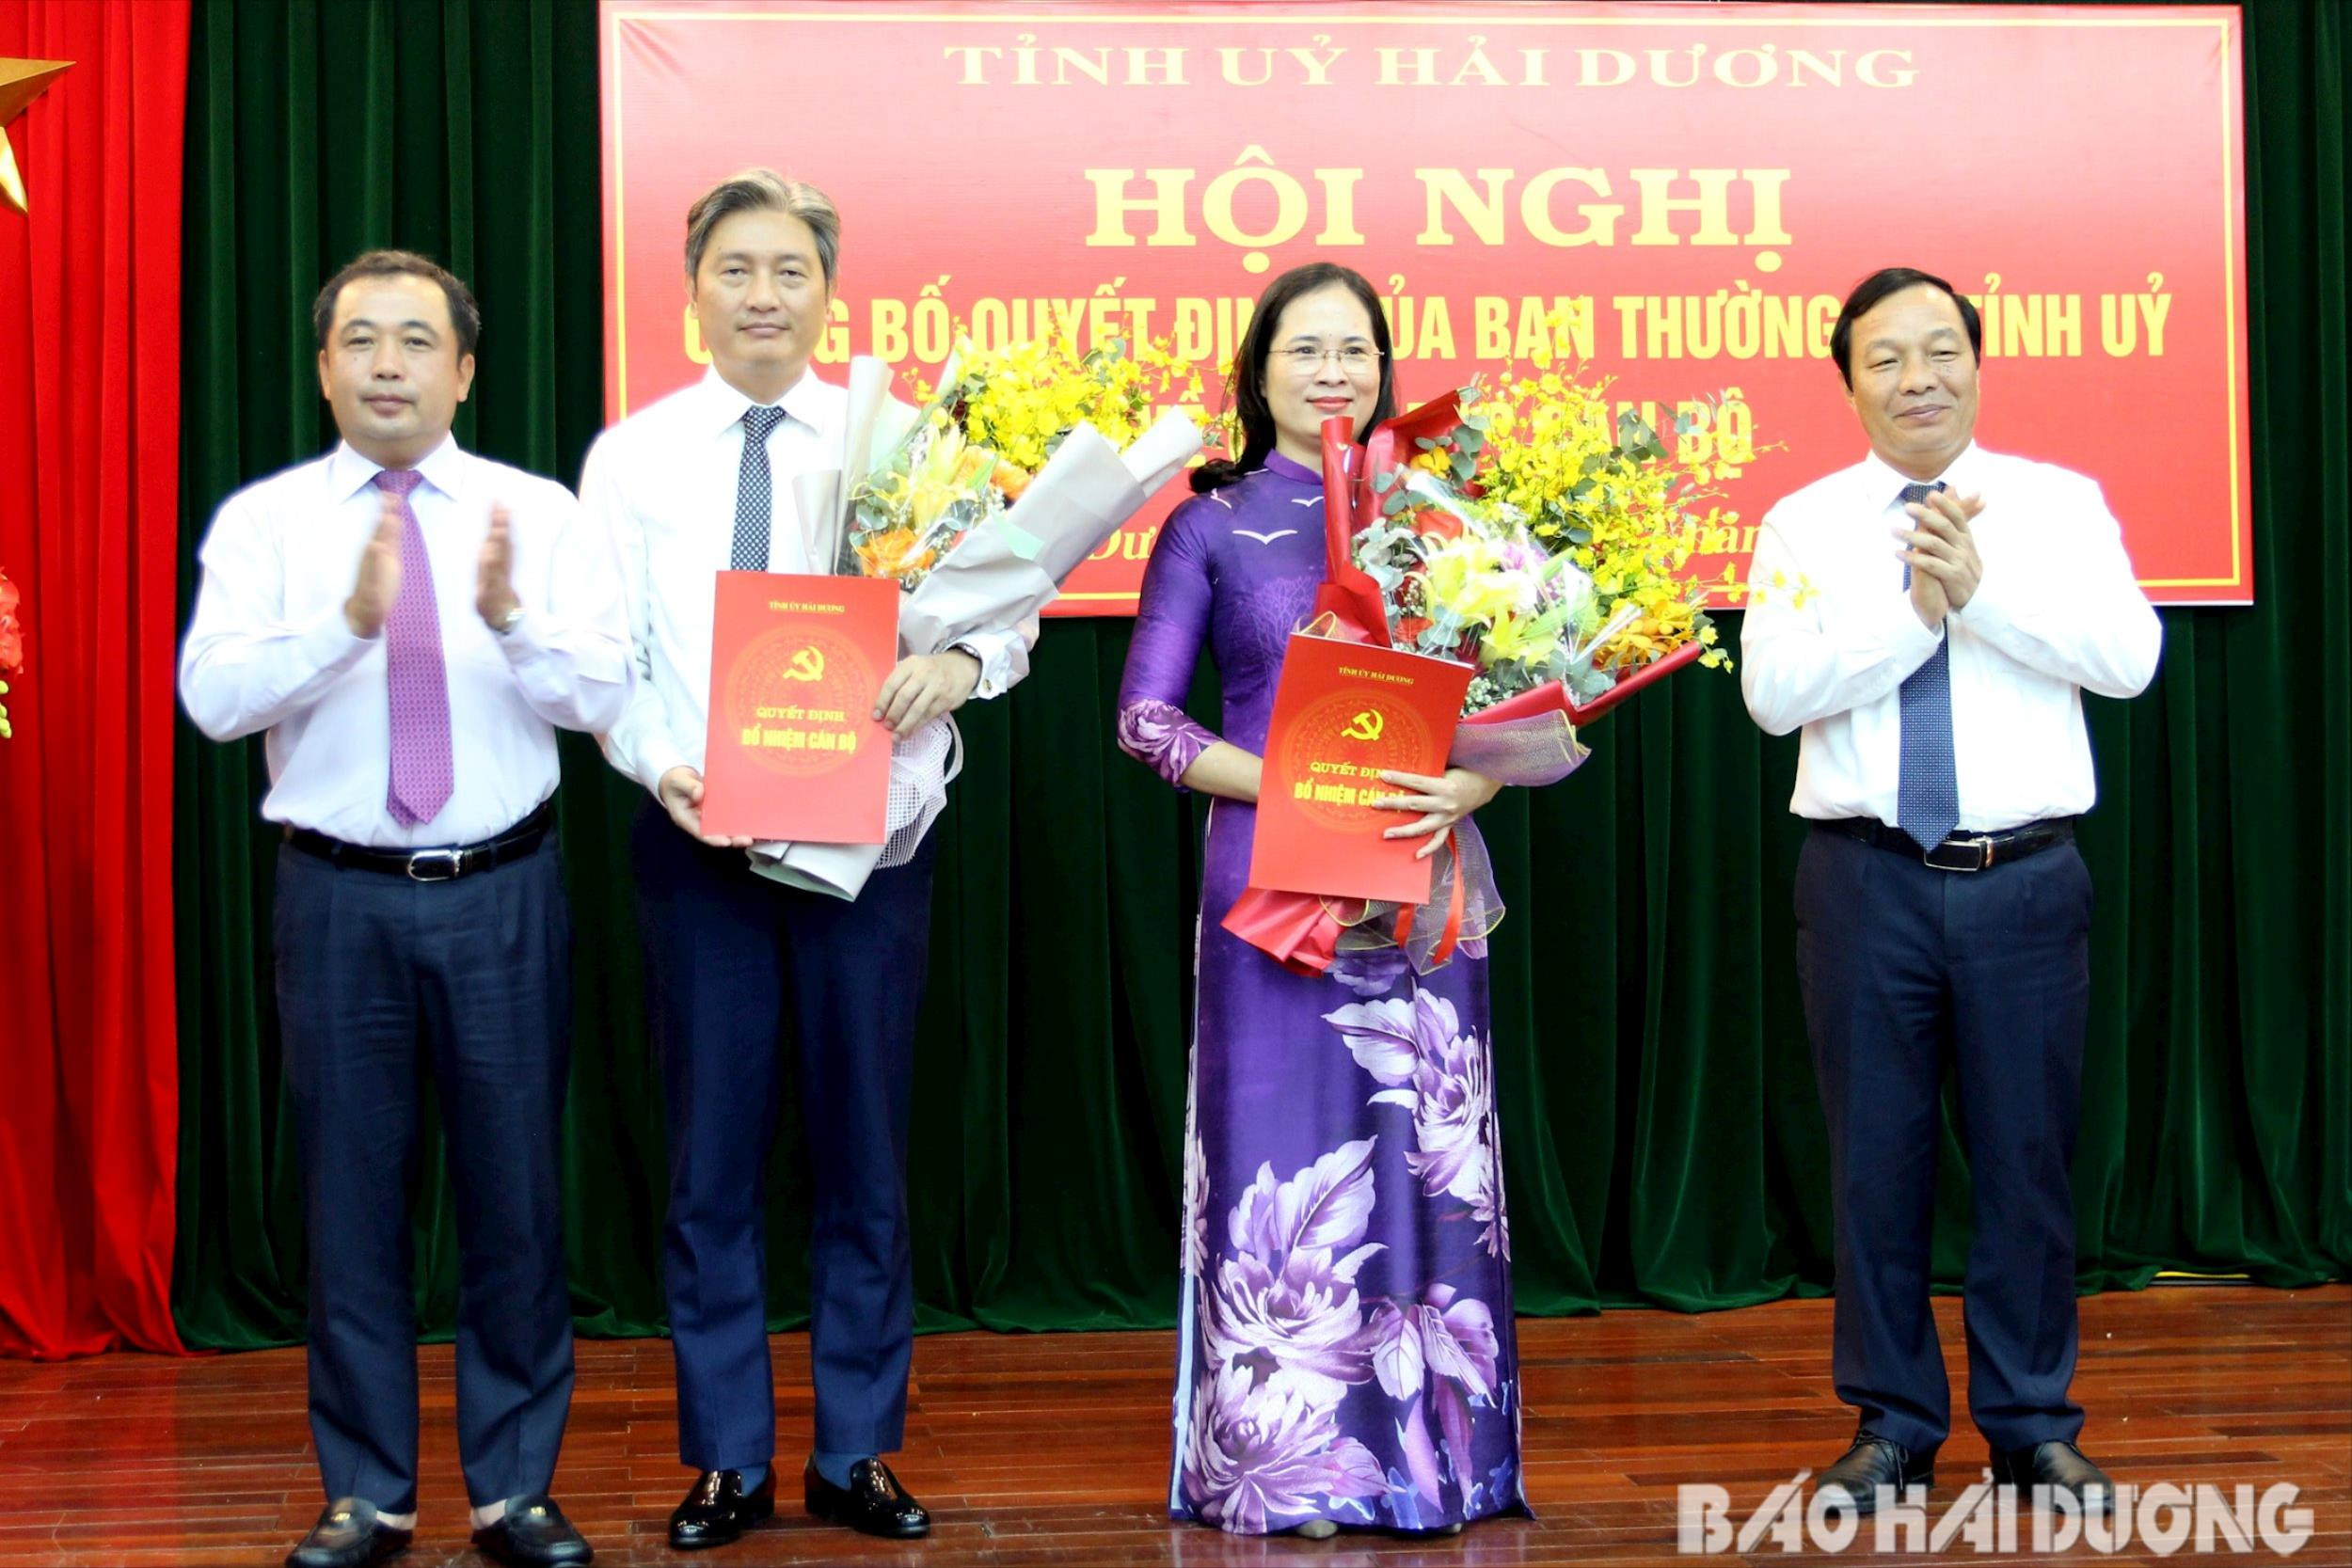 Các đồng chí Nguyễn Thị Thu Huyền, Nguyễn Xuân Mạnh giữ chức Phó Chánh Văn phòng Tỉnh ủy Hải Dương